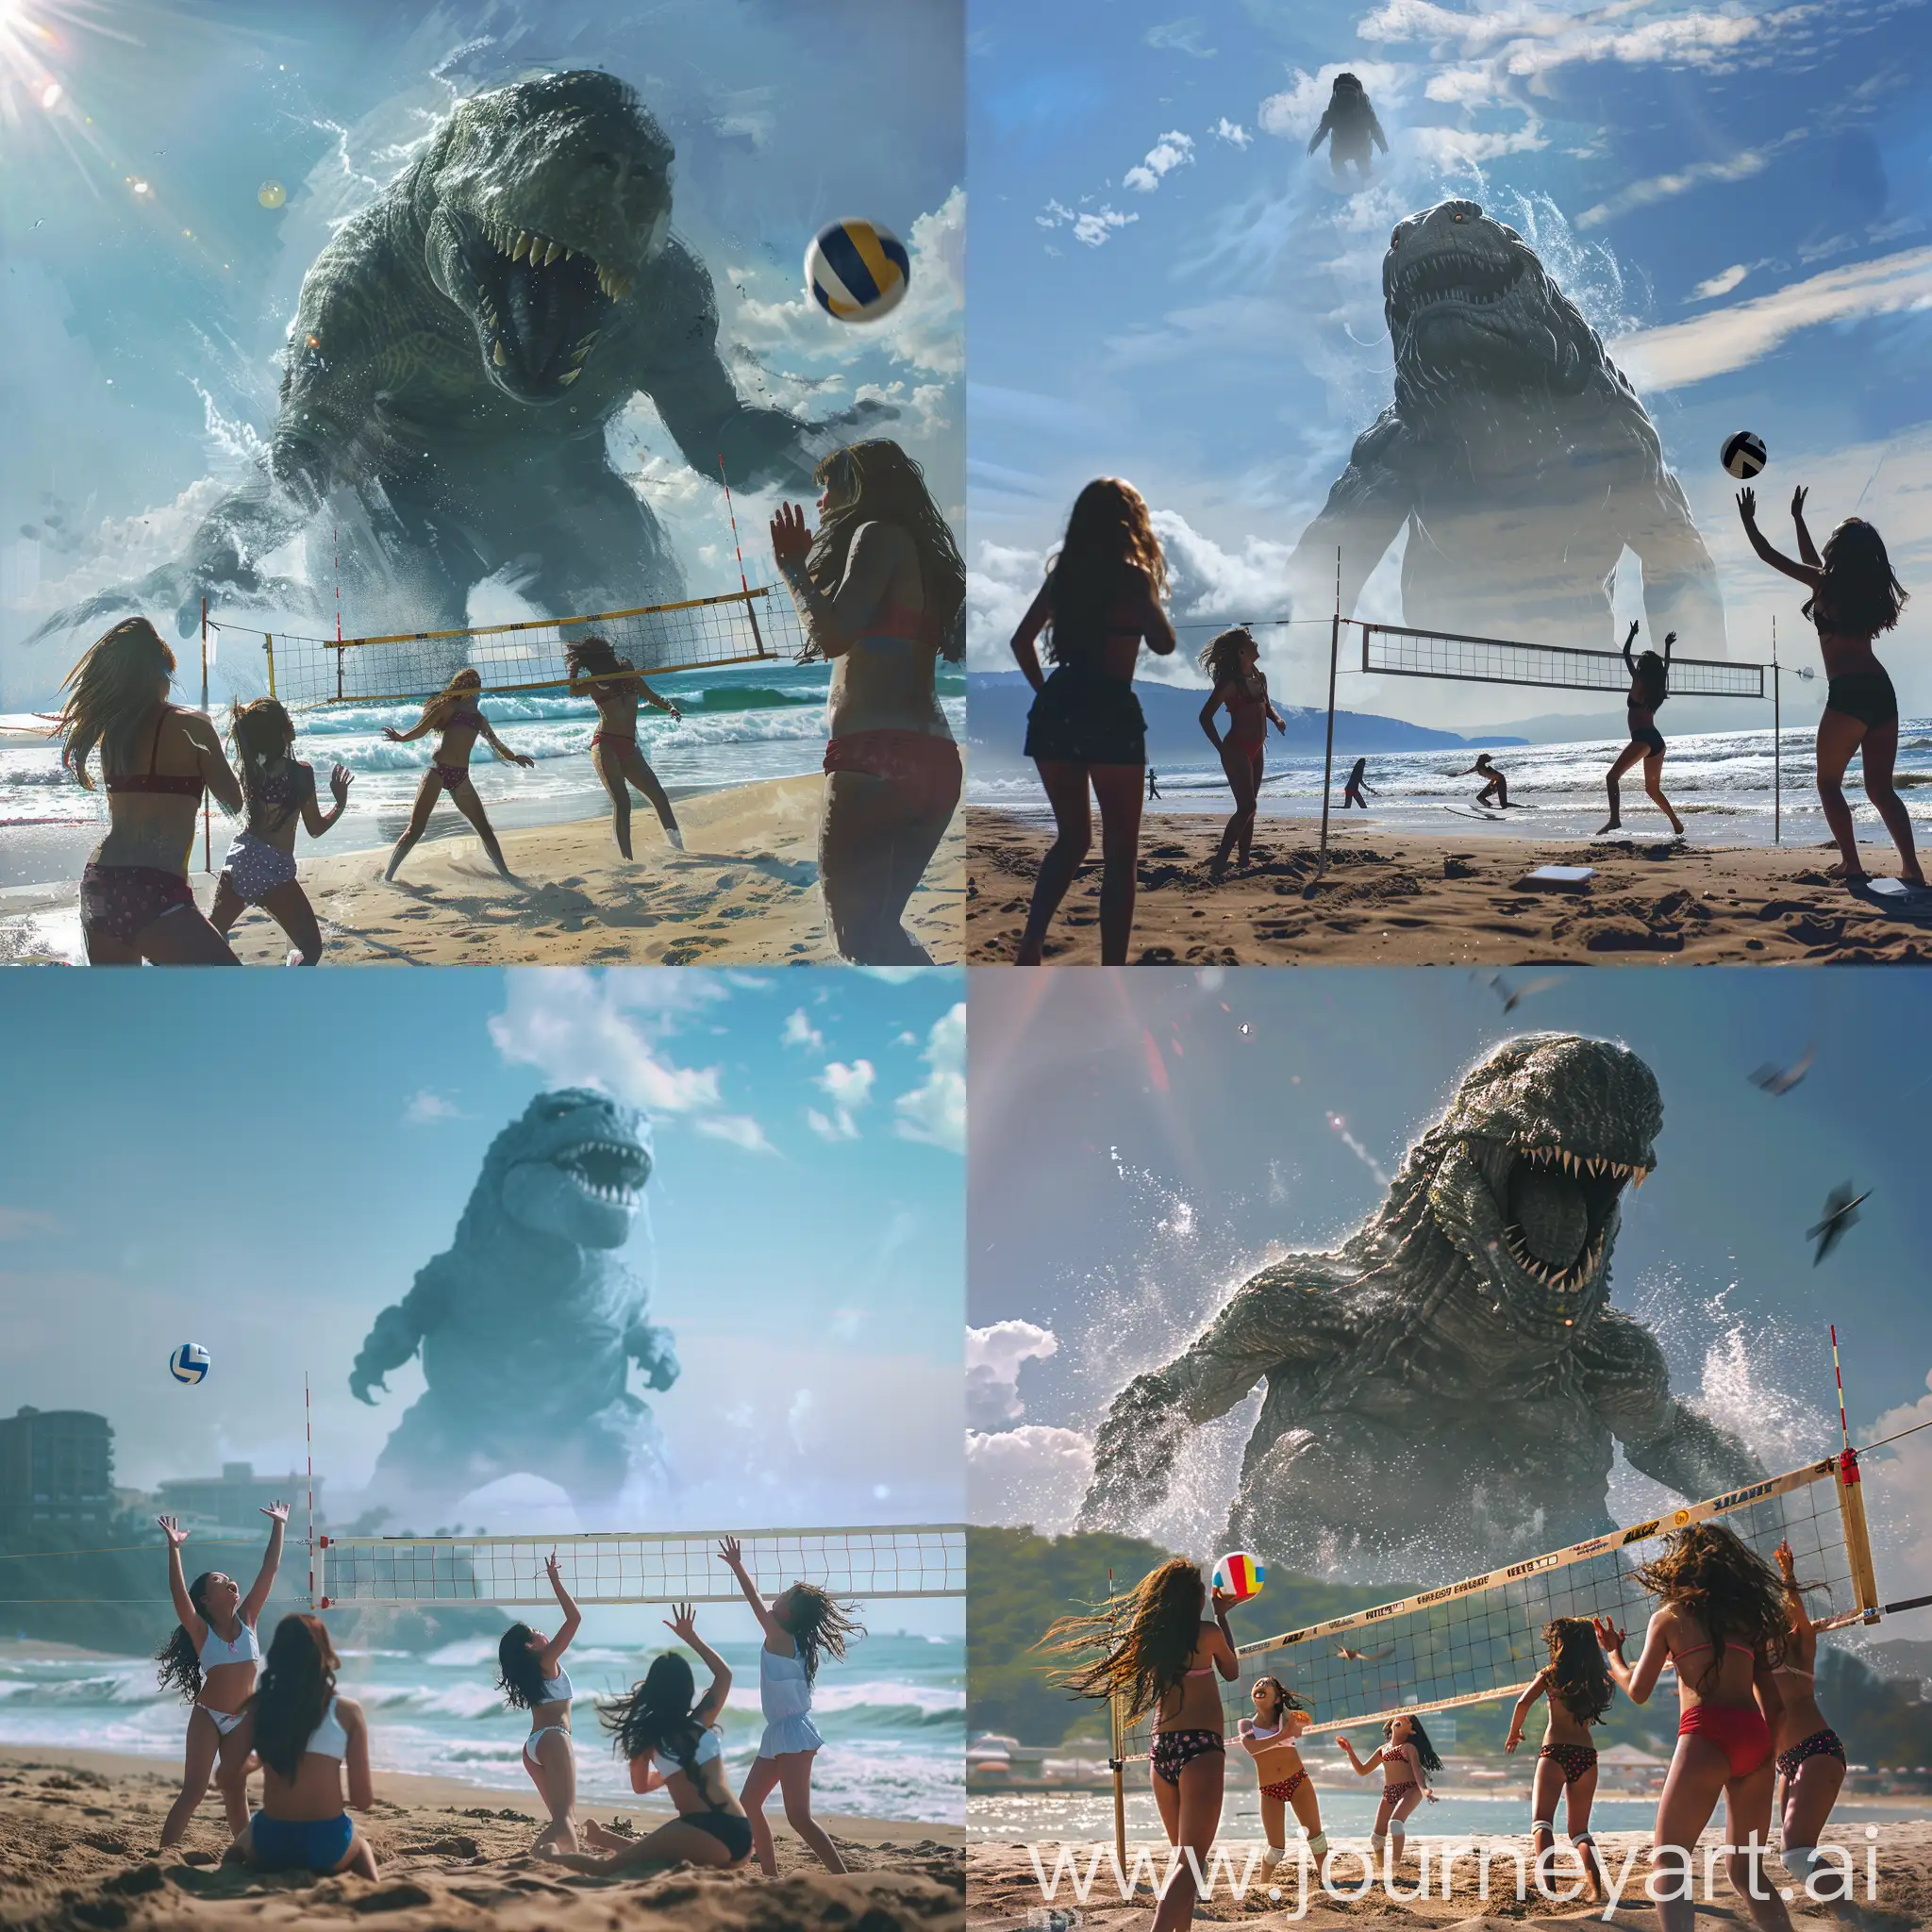 Teen-Girls-Enjoy-Beach-Volleyball-Amidst-Approaching-Sea-Monster